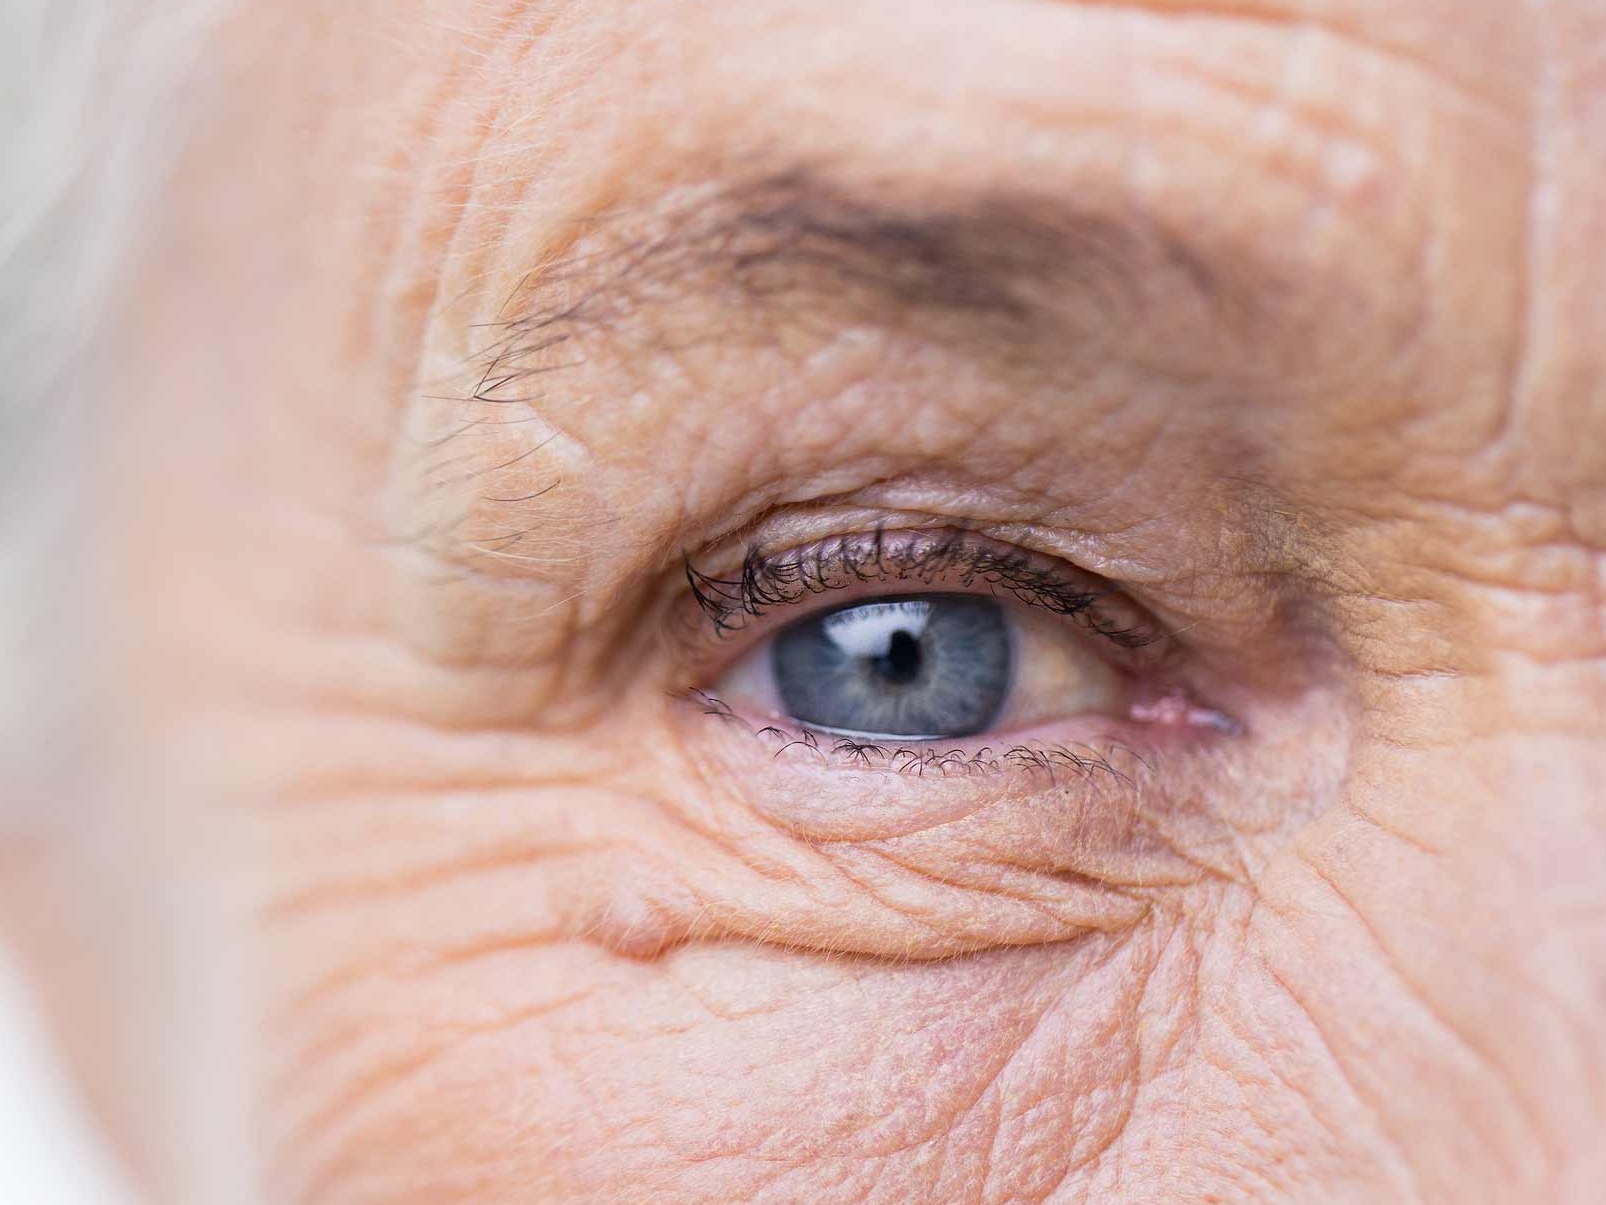 Die Abbildung zeigt eine Nahaufnahme eines erkrankten Auges und veranschaulicht mögliche Gefahren für die Augenumgebung. 